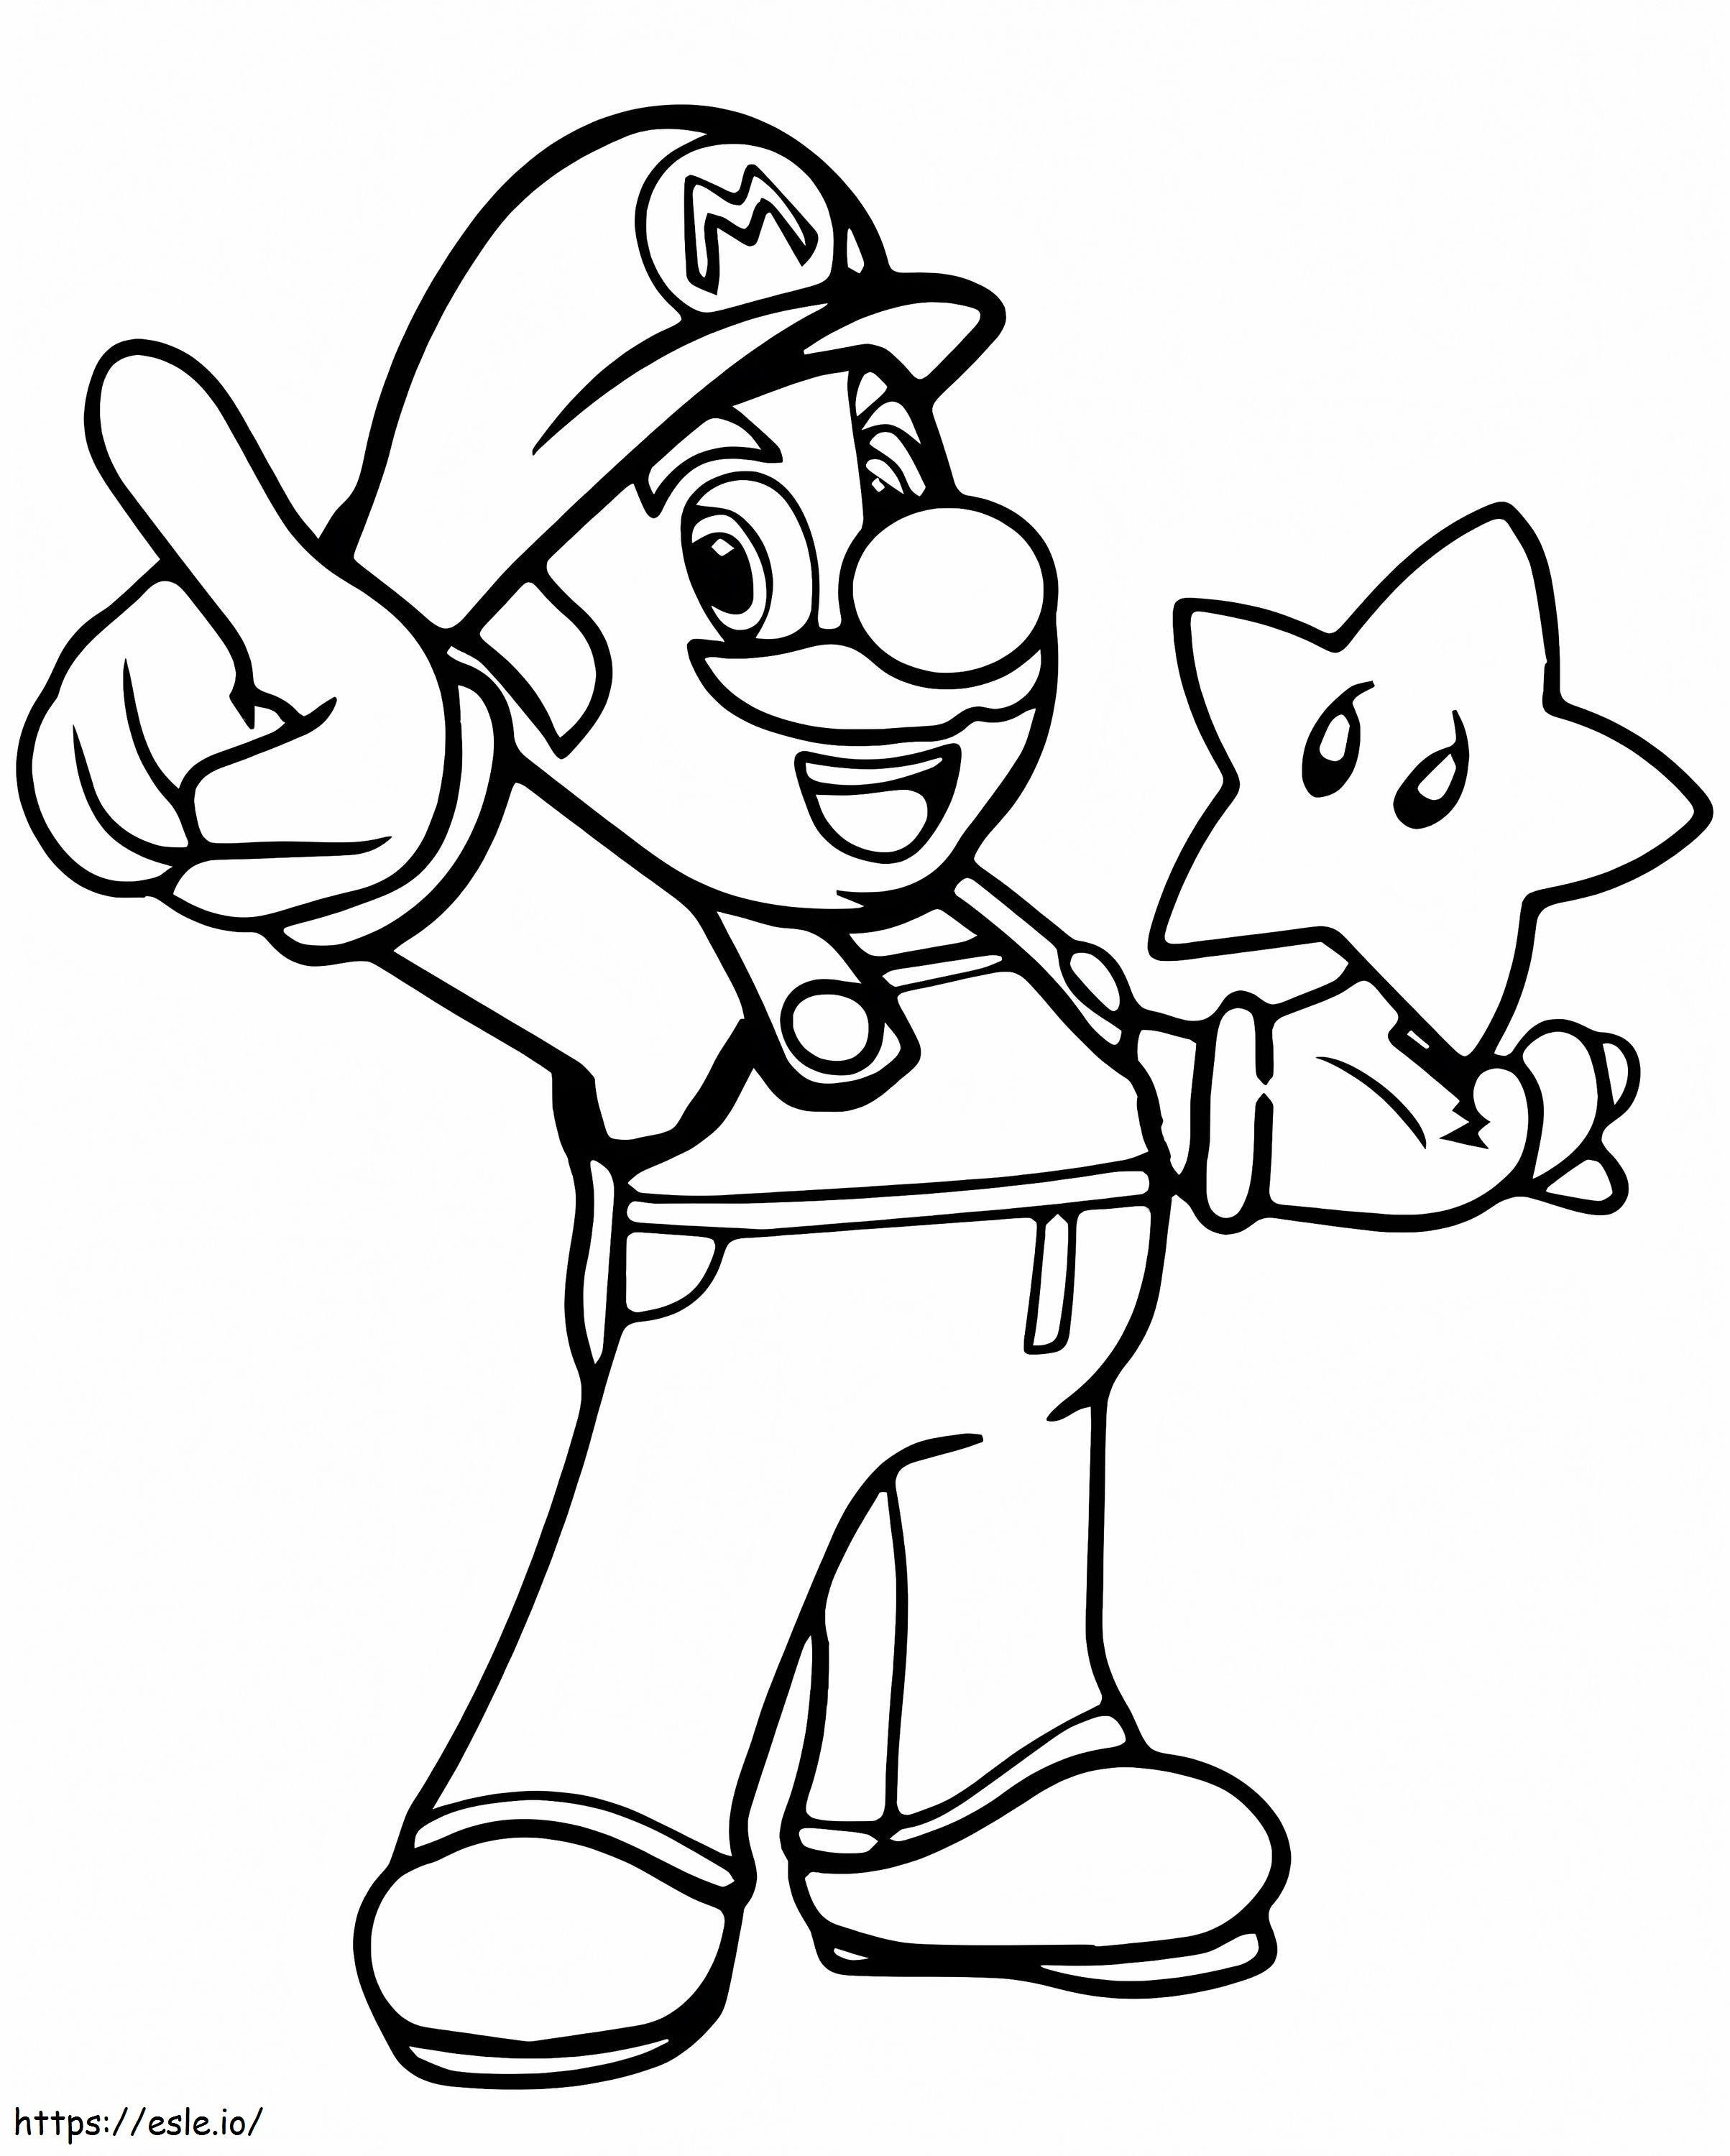 Mario ja tähti värityskuva